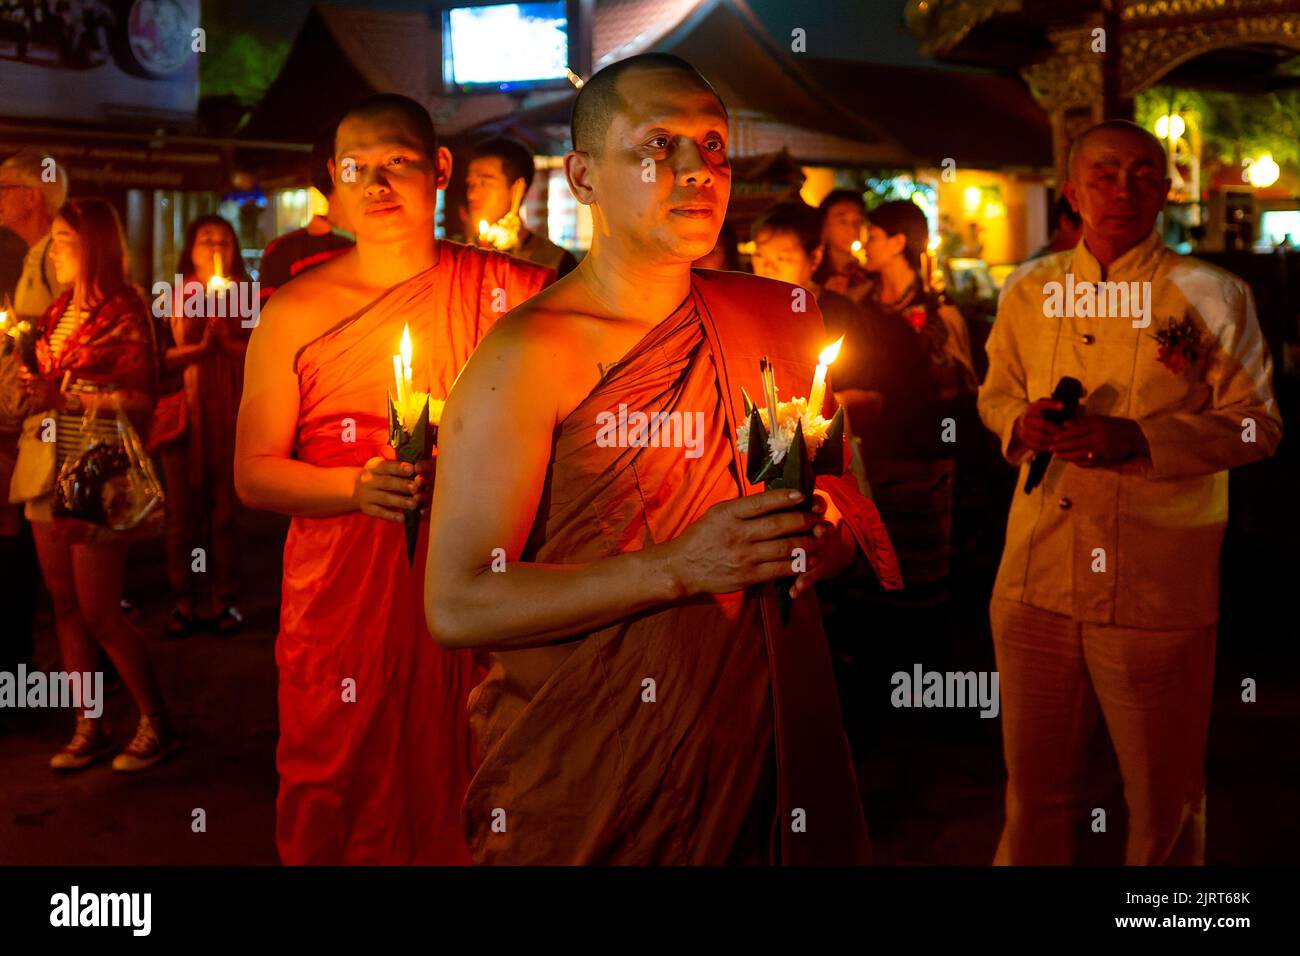 Per il festival 'Chiang mai Unplugged', ci fu una cerimonia a lume di candela al Wat Srisuphan, un tempio buddista a Chiang mai, Thailandia Foto Stock